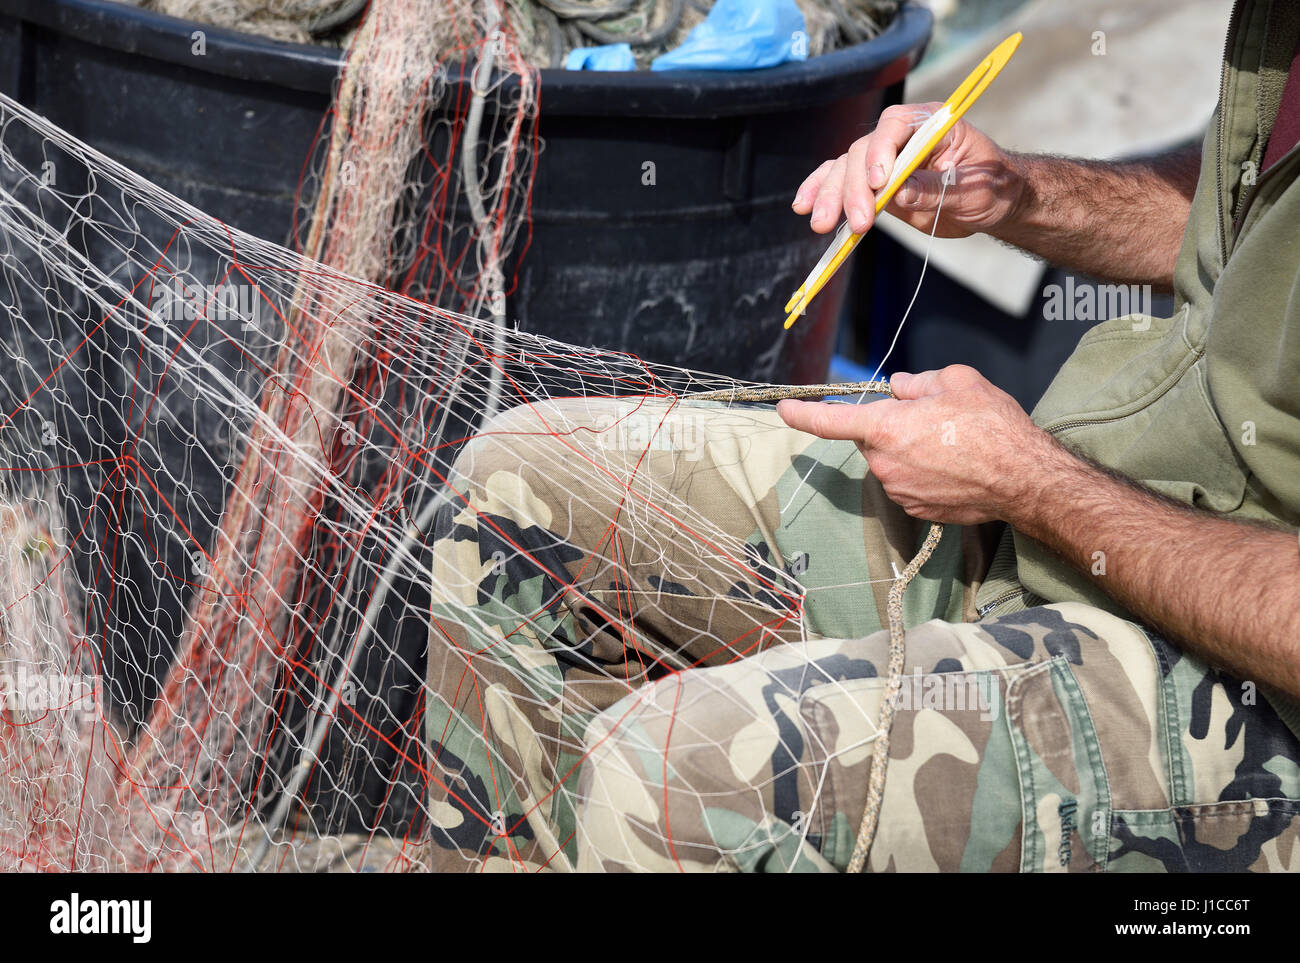 Hände bei der Arbeit am Fischernetz mit einem Werkzeug Stockfoto